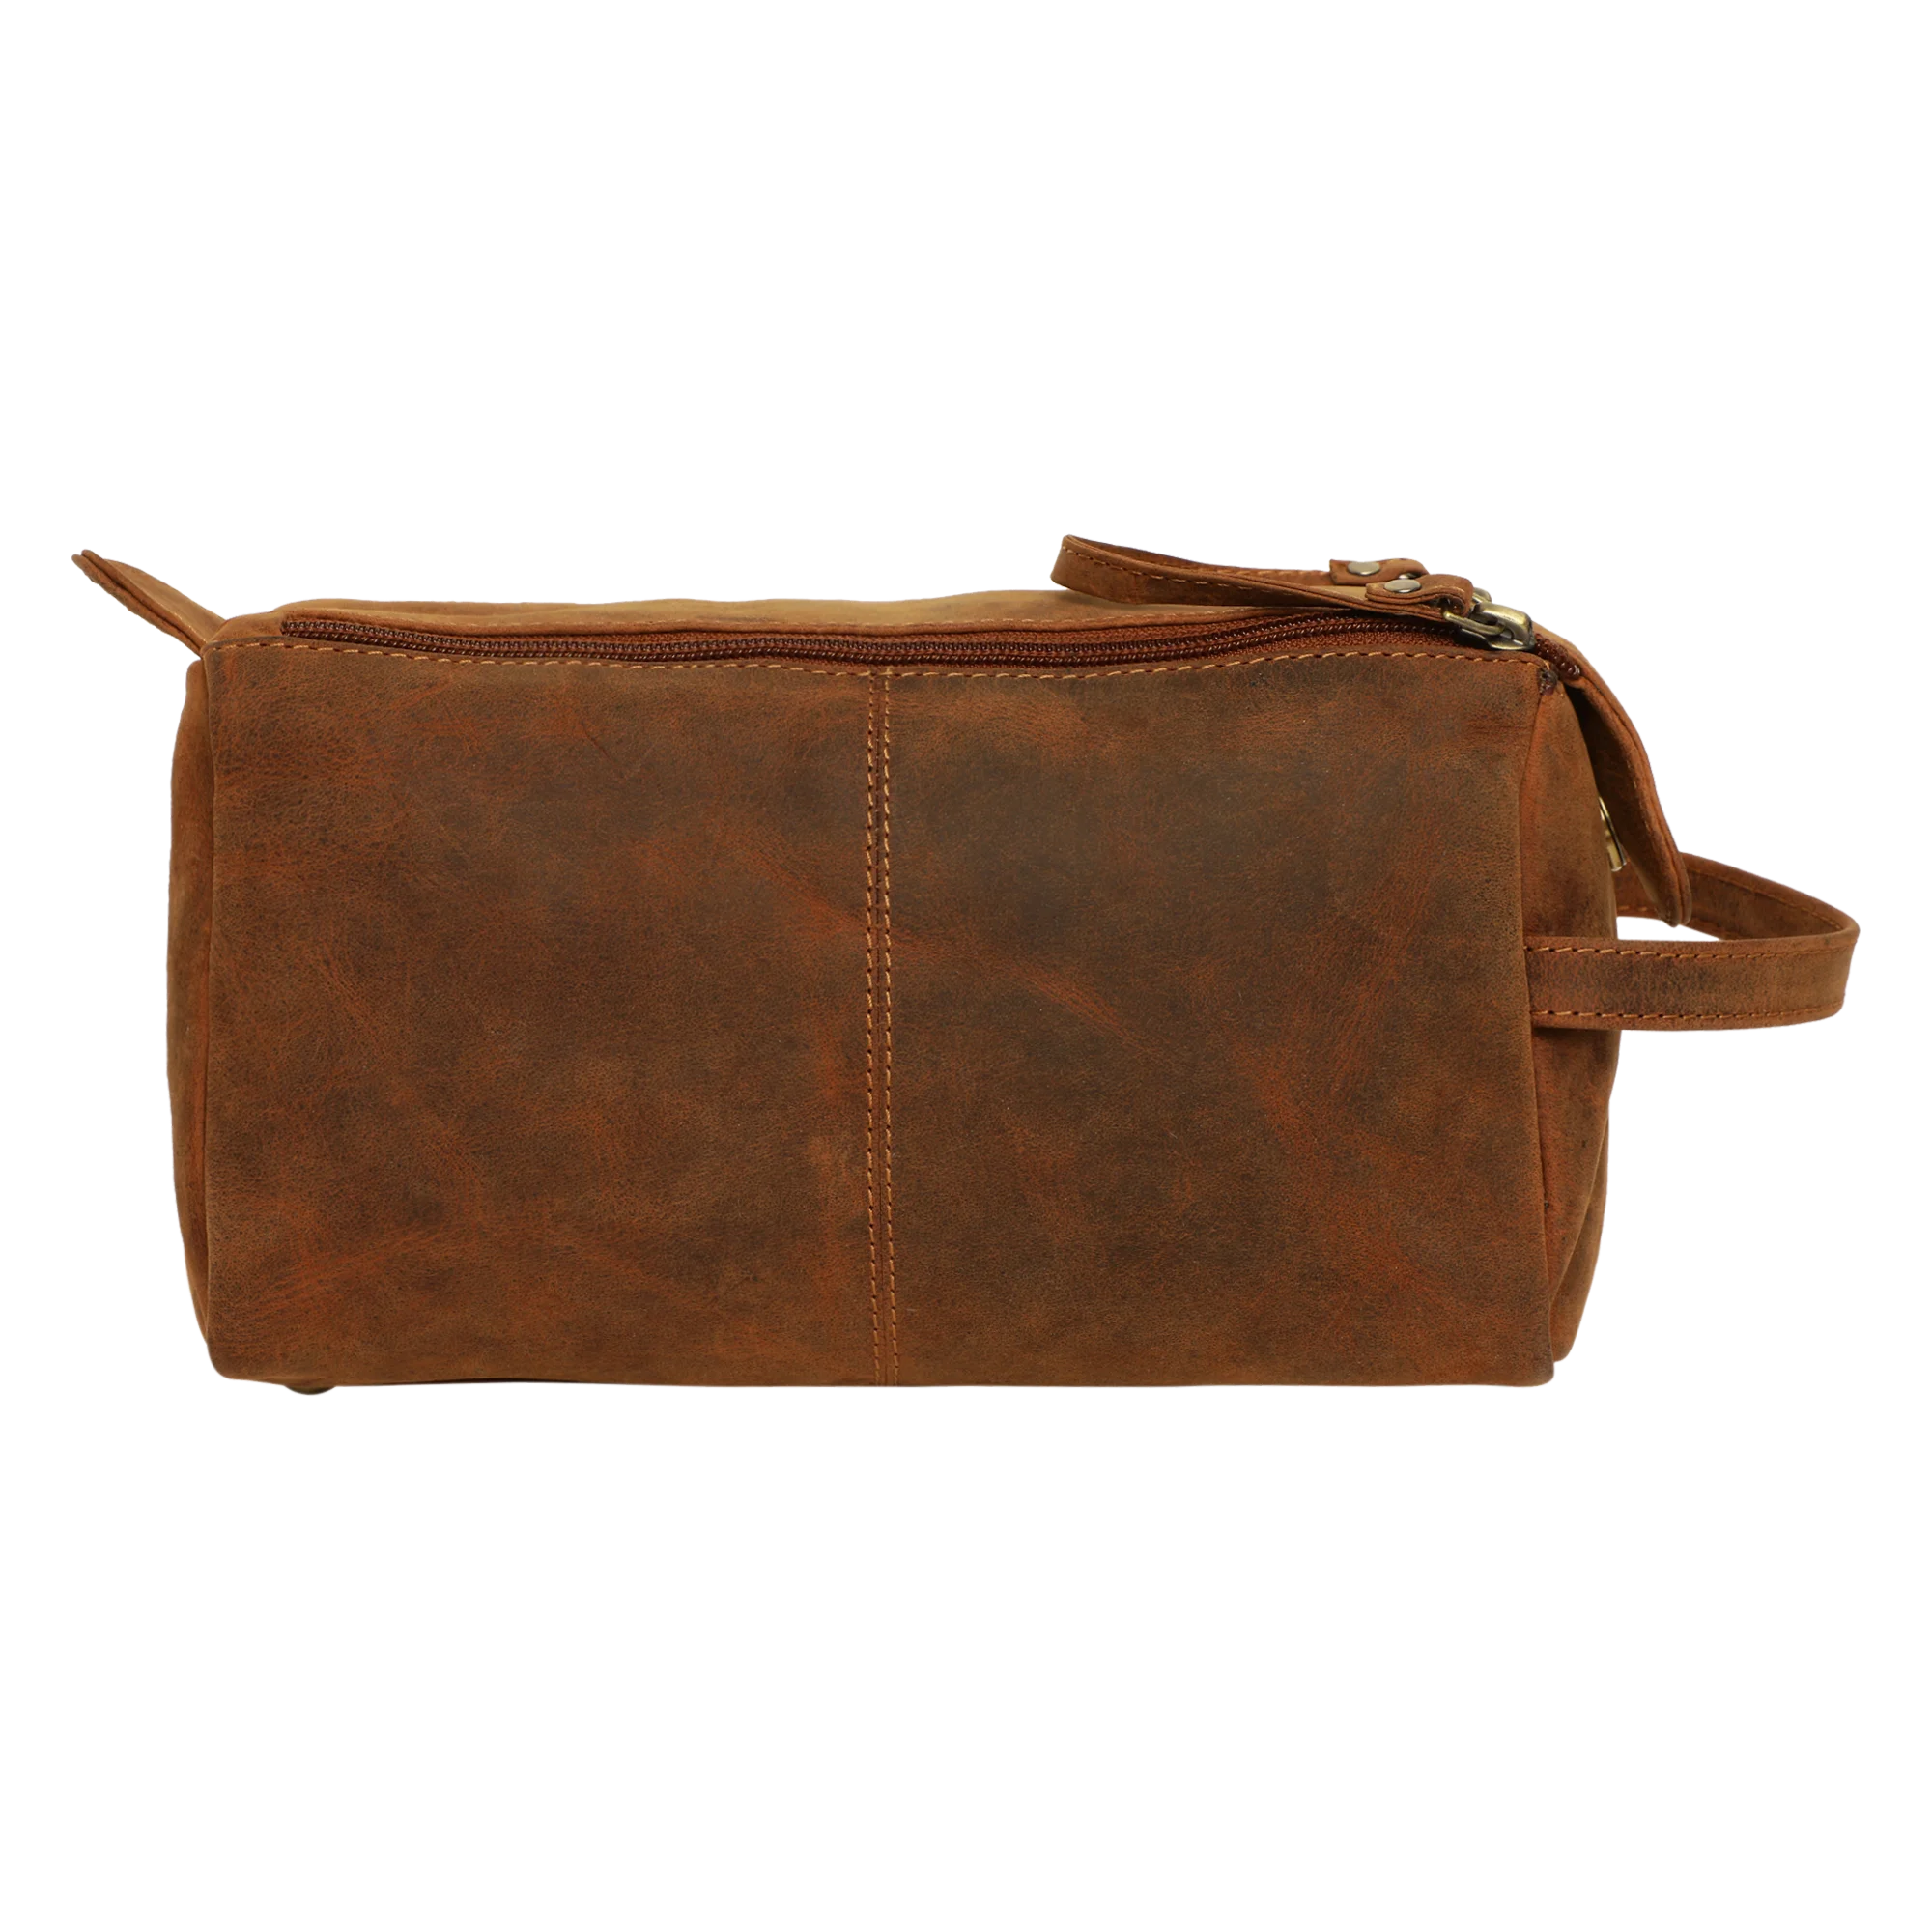 Buffalo Genuine Leather Toiletry Bag Hunter Dopp Kit Shaving and Grooming Kit for Travel Gift for Men Women (Brown)